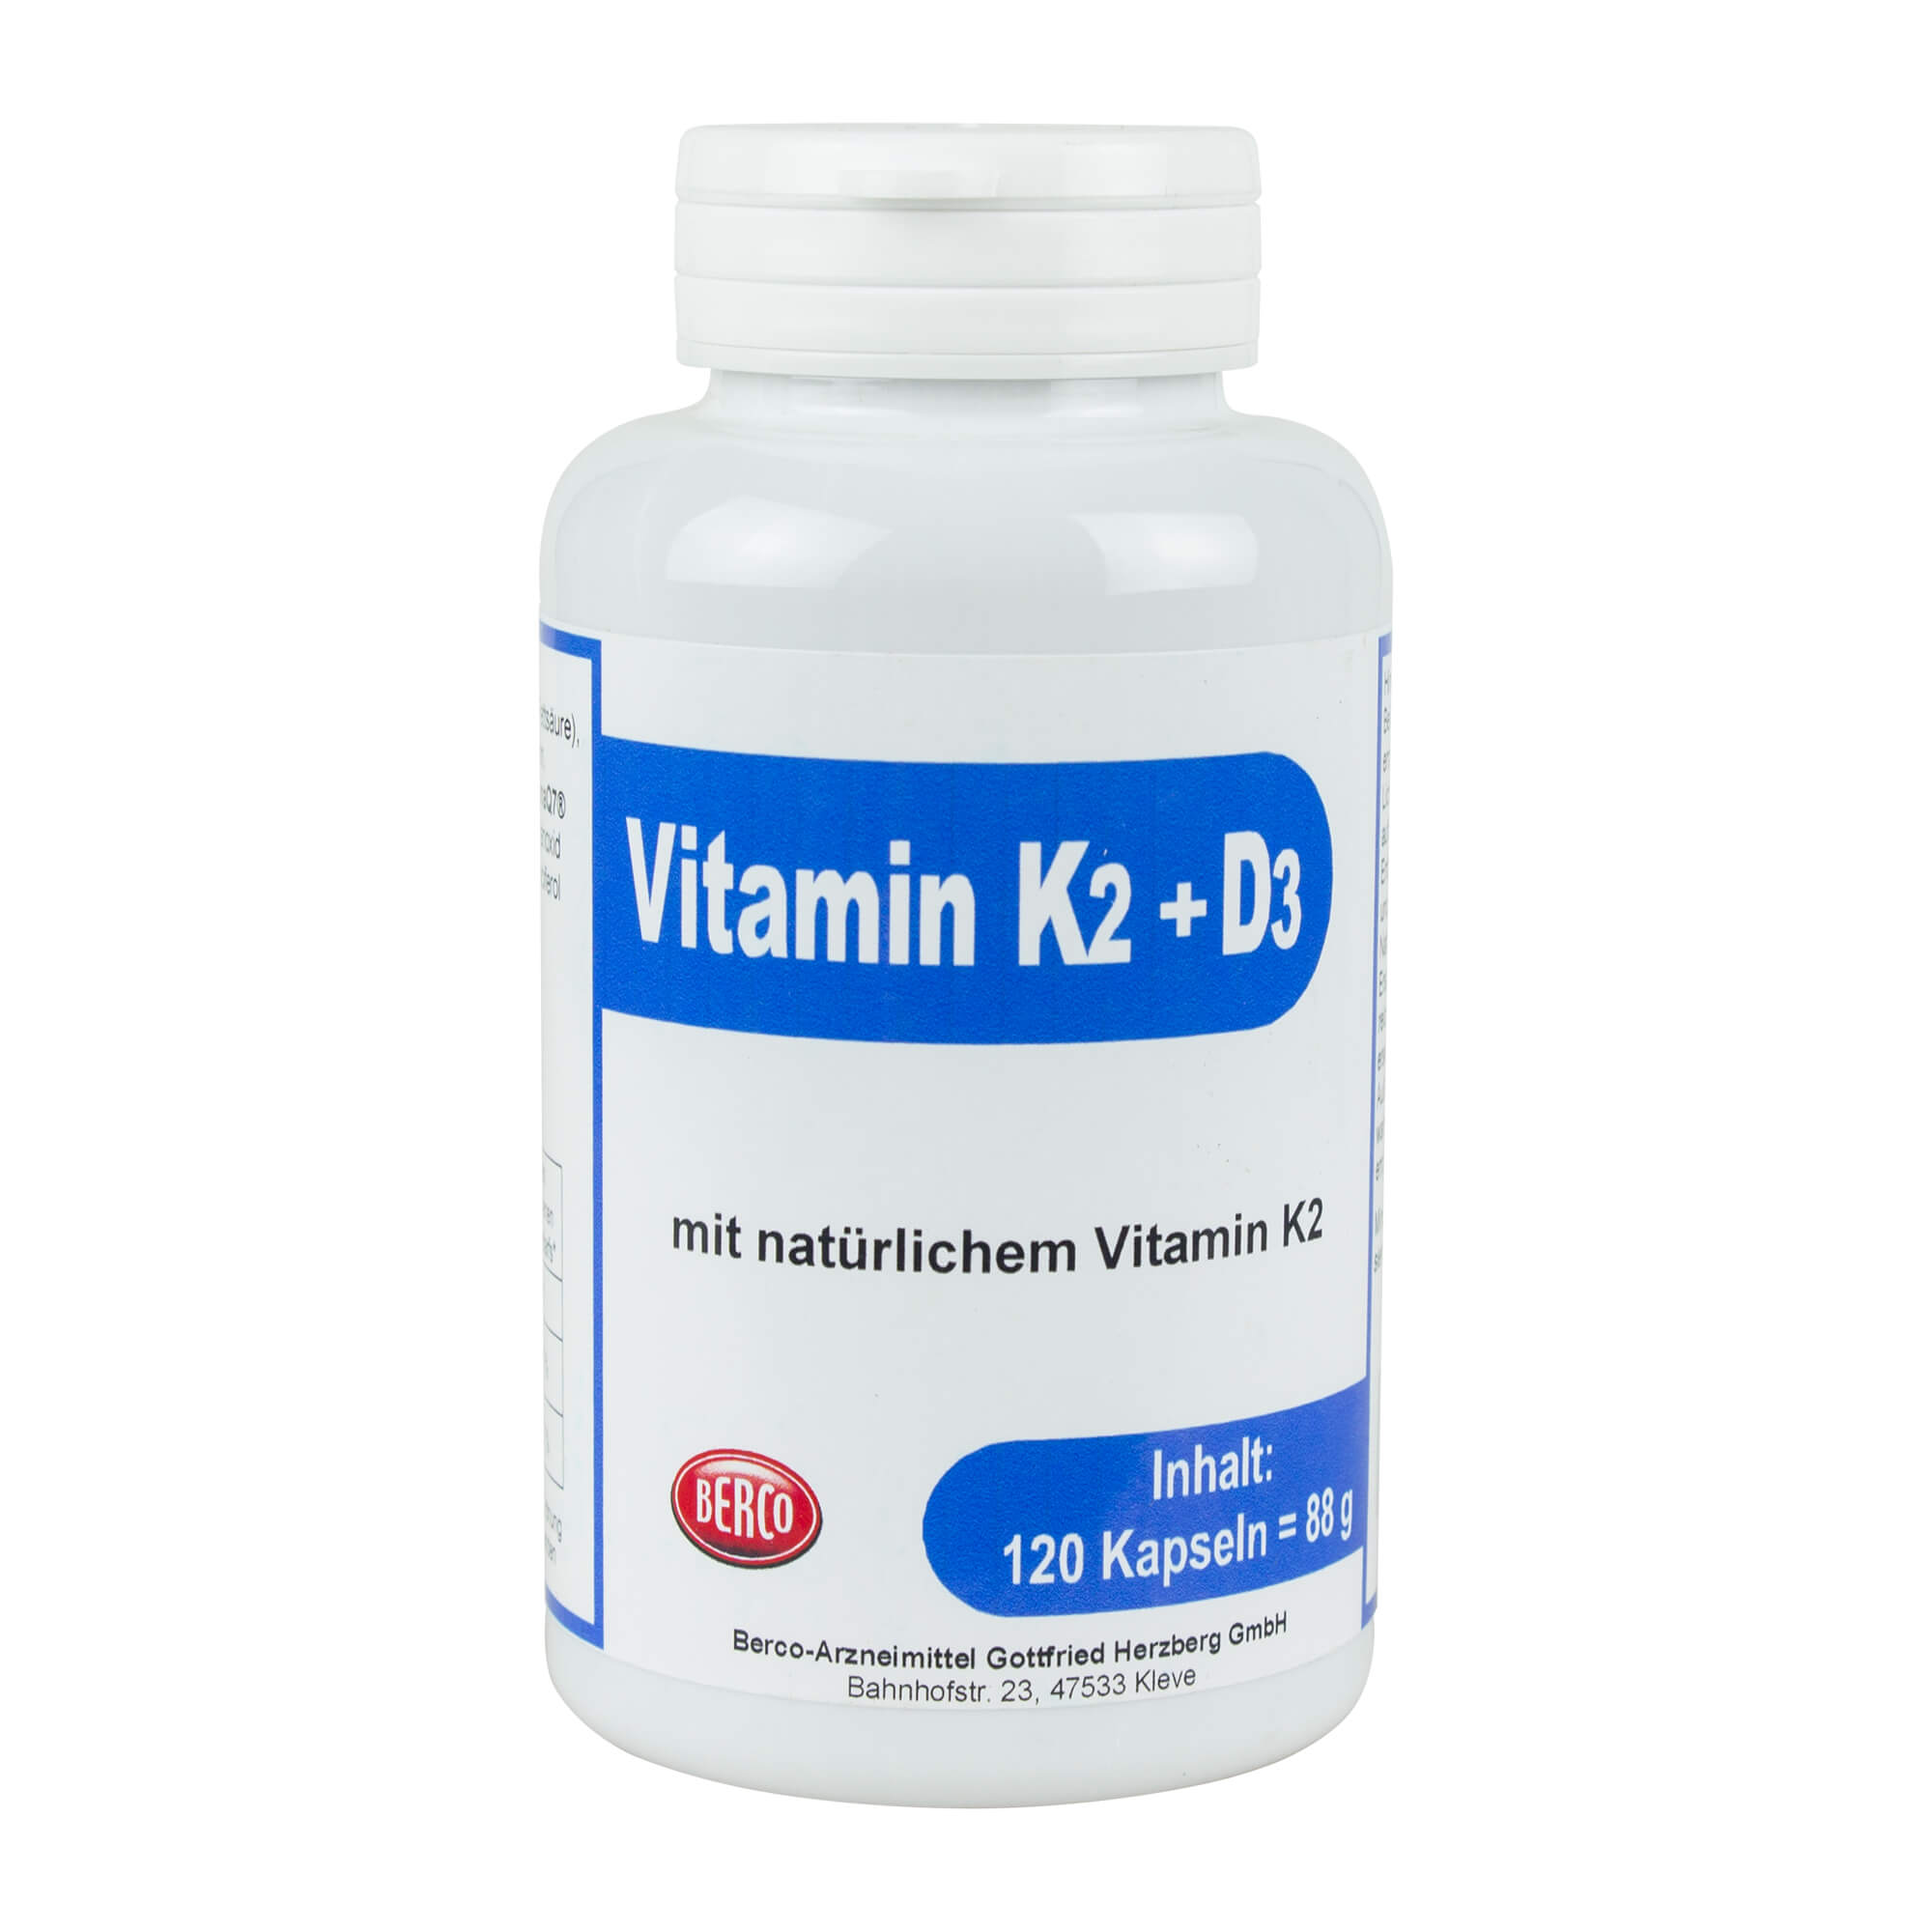 Nahrungsergänzungsmittel mit natürlichem Vitamin K2.